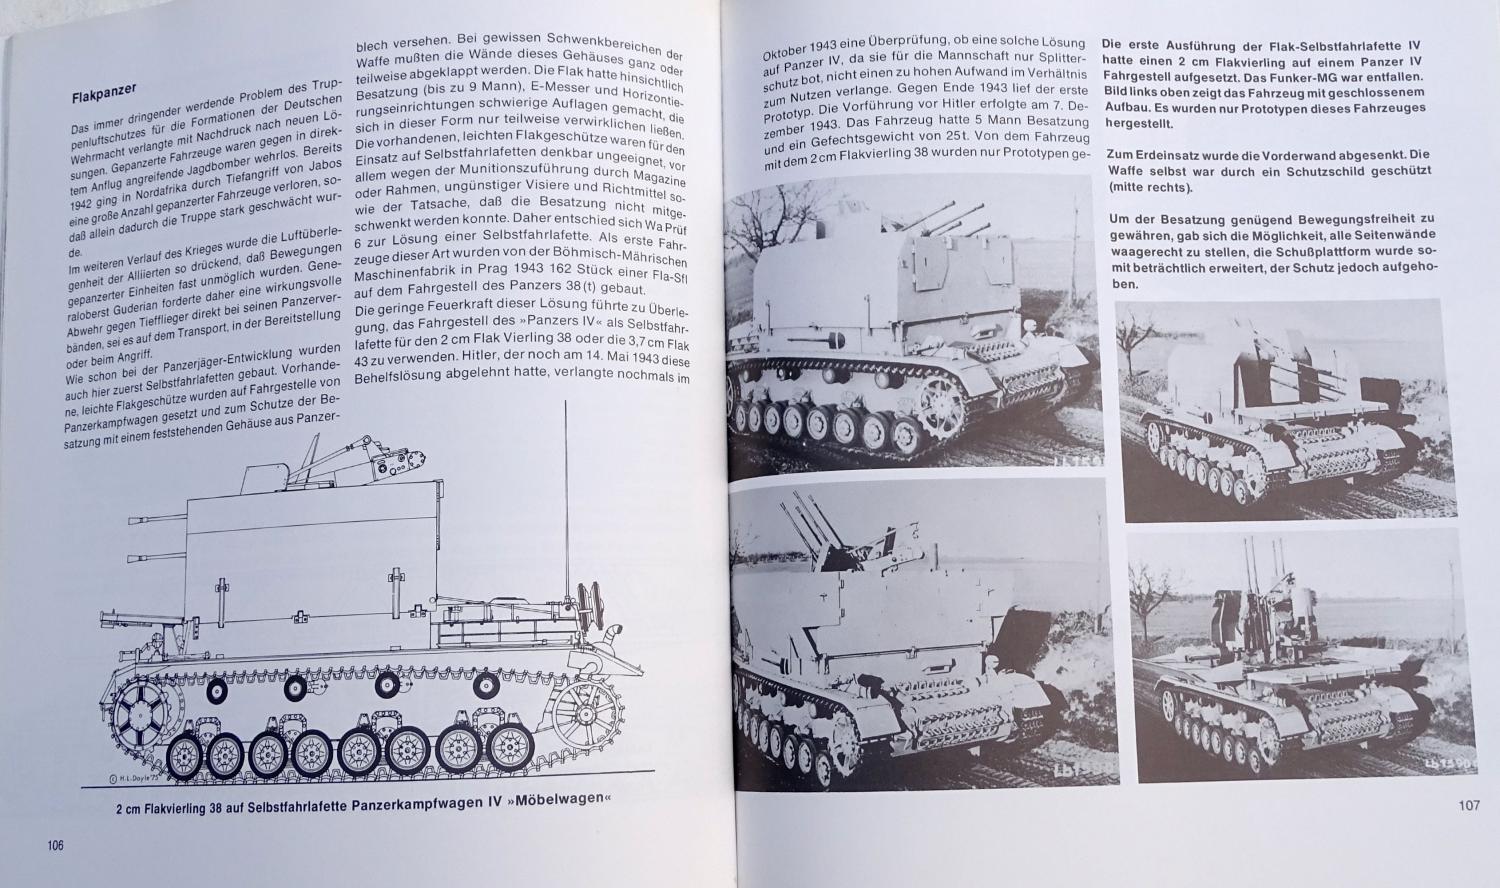 Der panzer Kampfwagen IV und seine abarten.  Spielberger  Band 5 der reihe milit&auml;rfahrzeuge